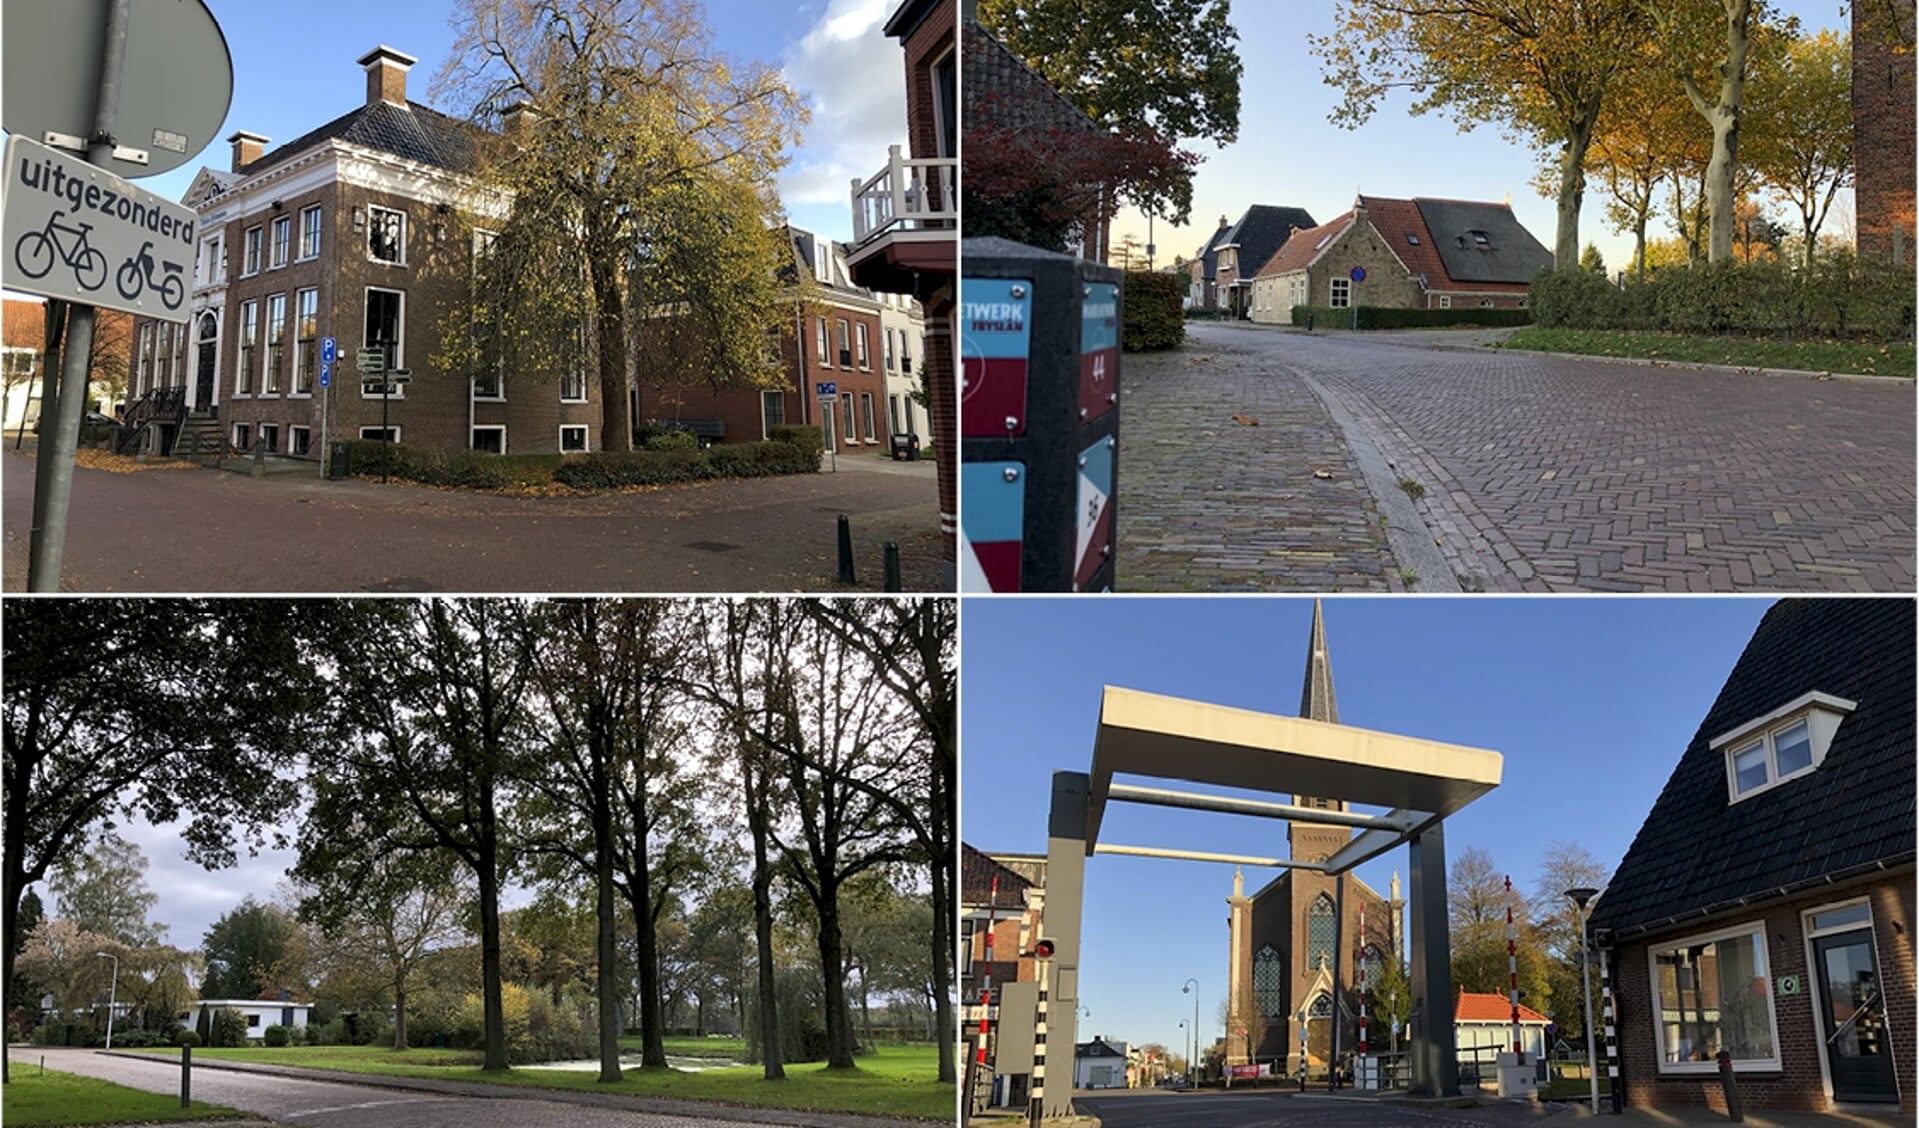 Vier van de twaalf kruispunten uit de fotopuzzel: in Kollum,Jistrum, Beetsterzwaag en Wergea.